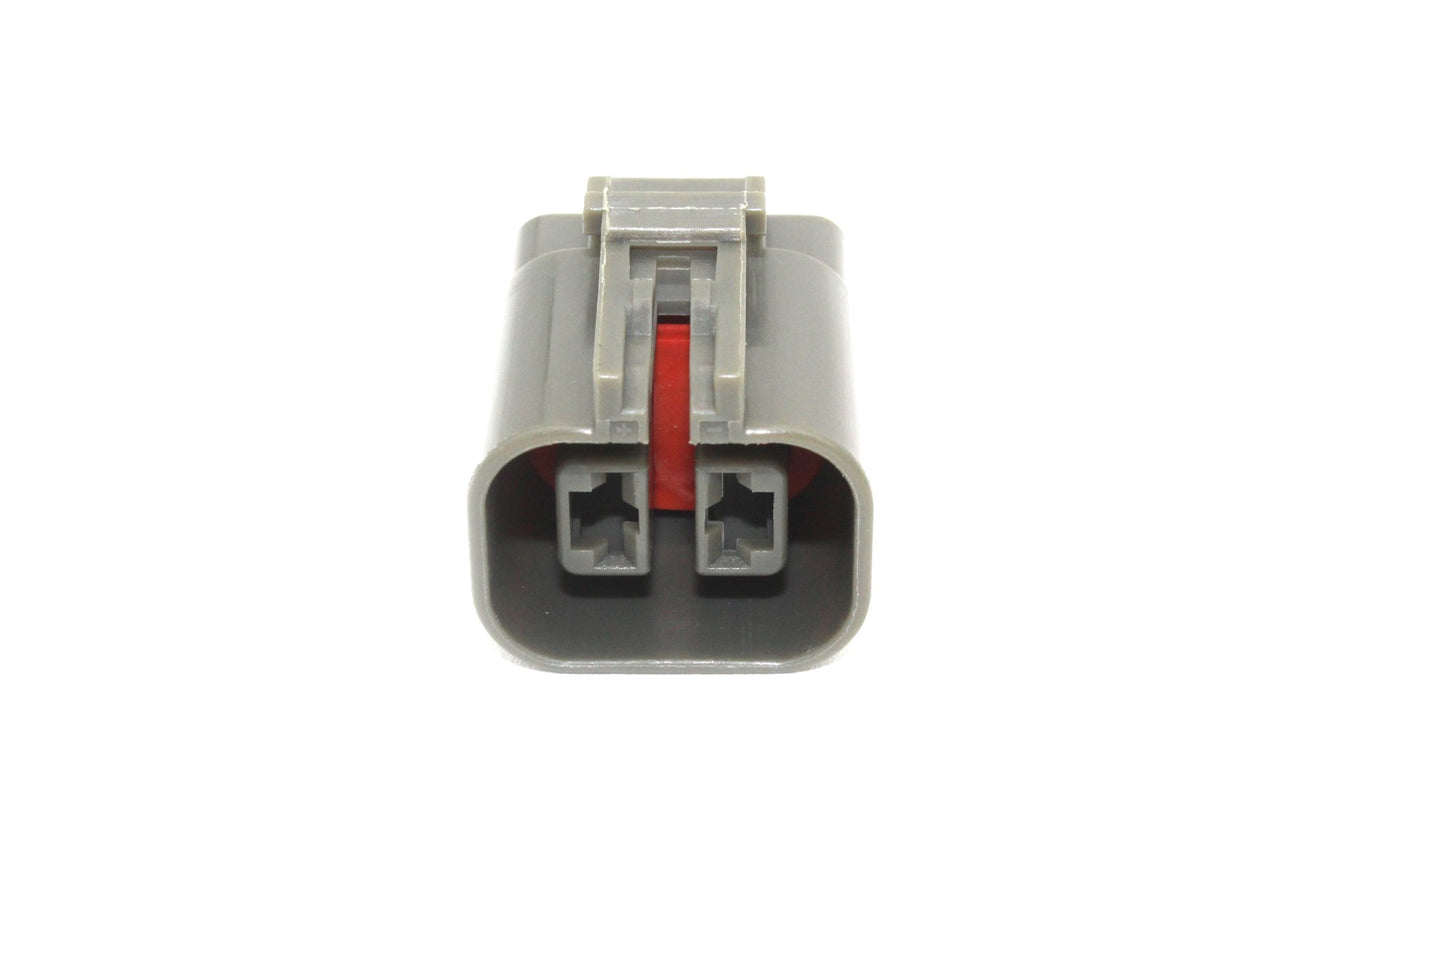 Square Plug Alternator Plug and Terminal Kit